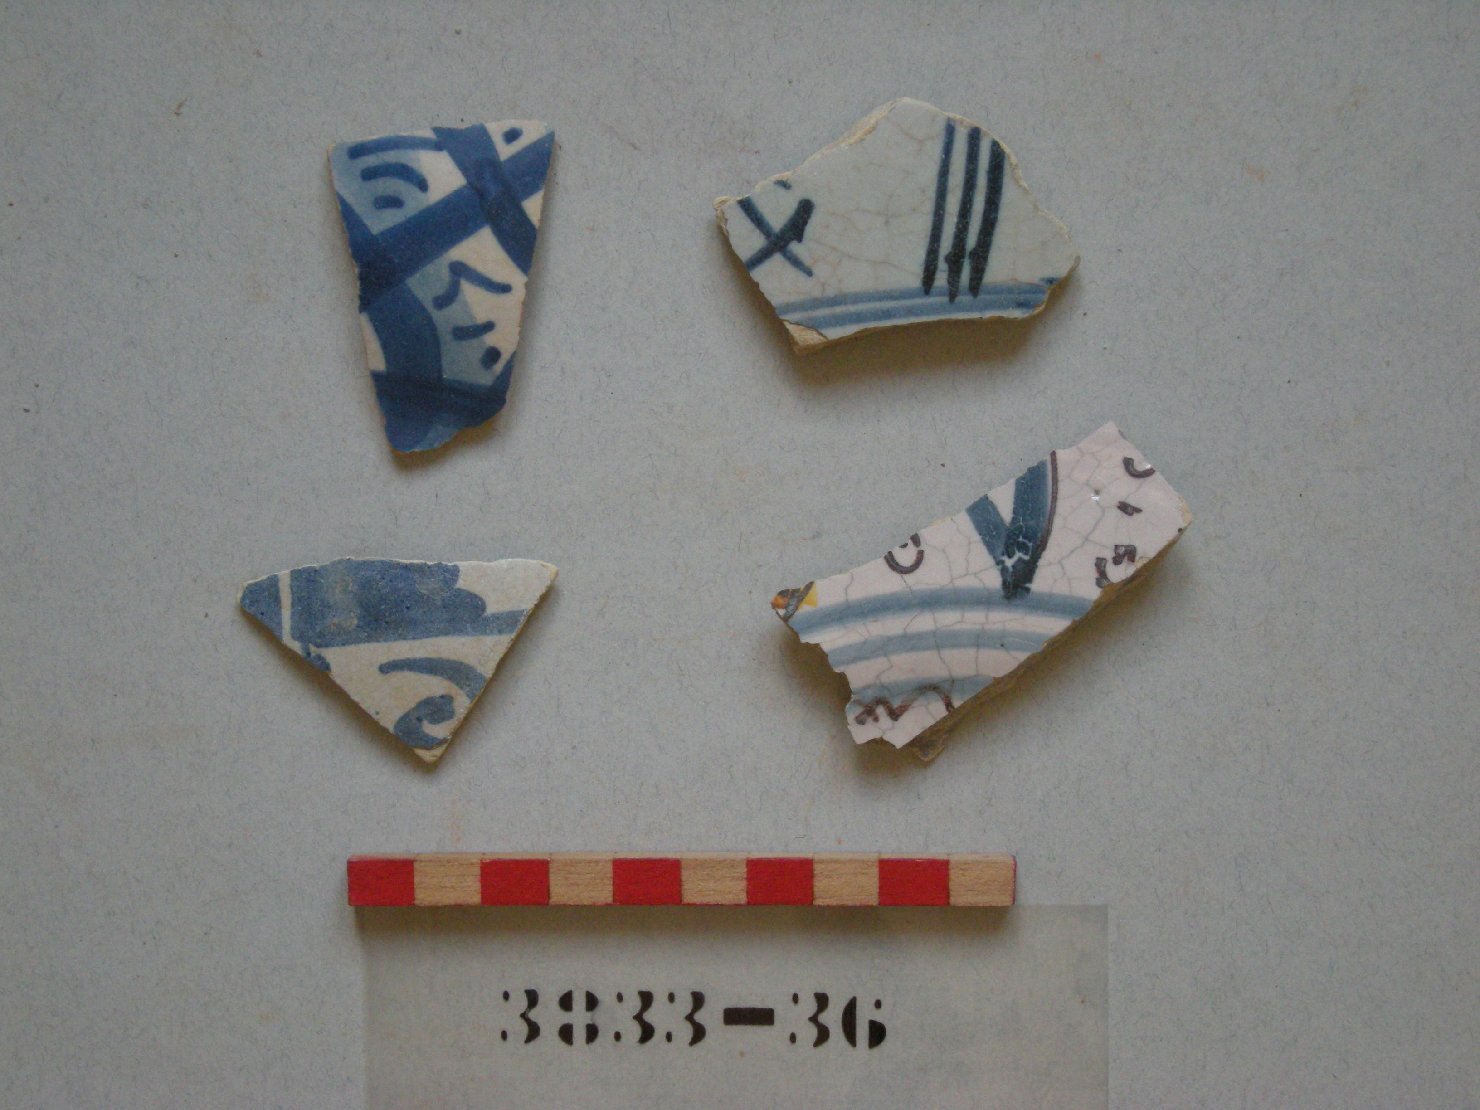 motivi decorativi geometrici (boccale, frammento) - ambito romagnolo-marchigiano (prima metà sec. XVI)